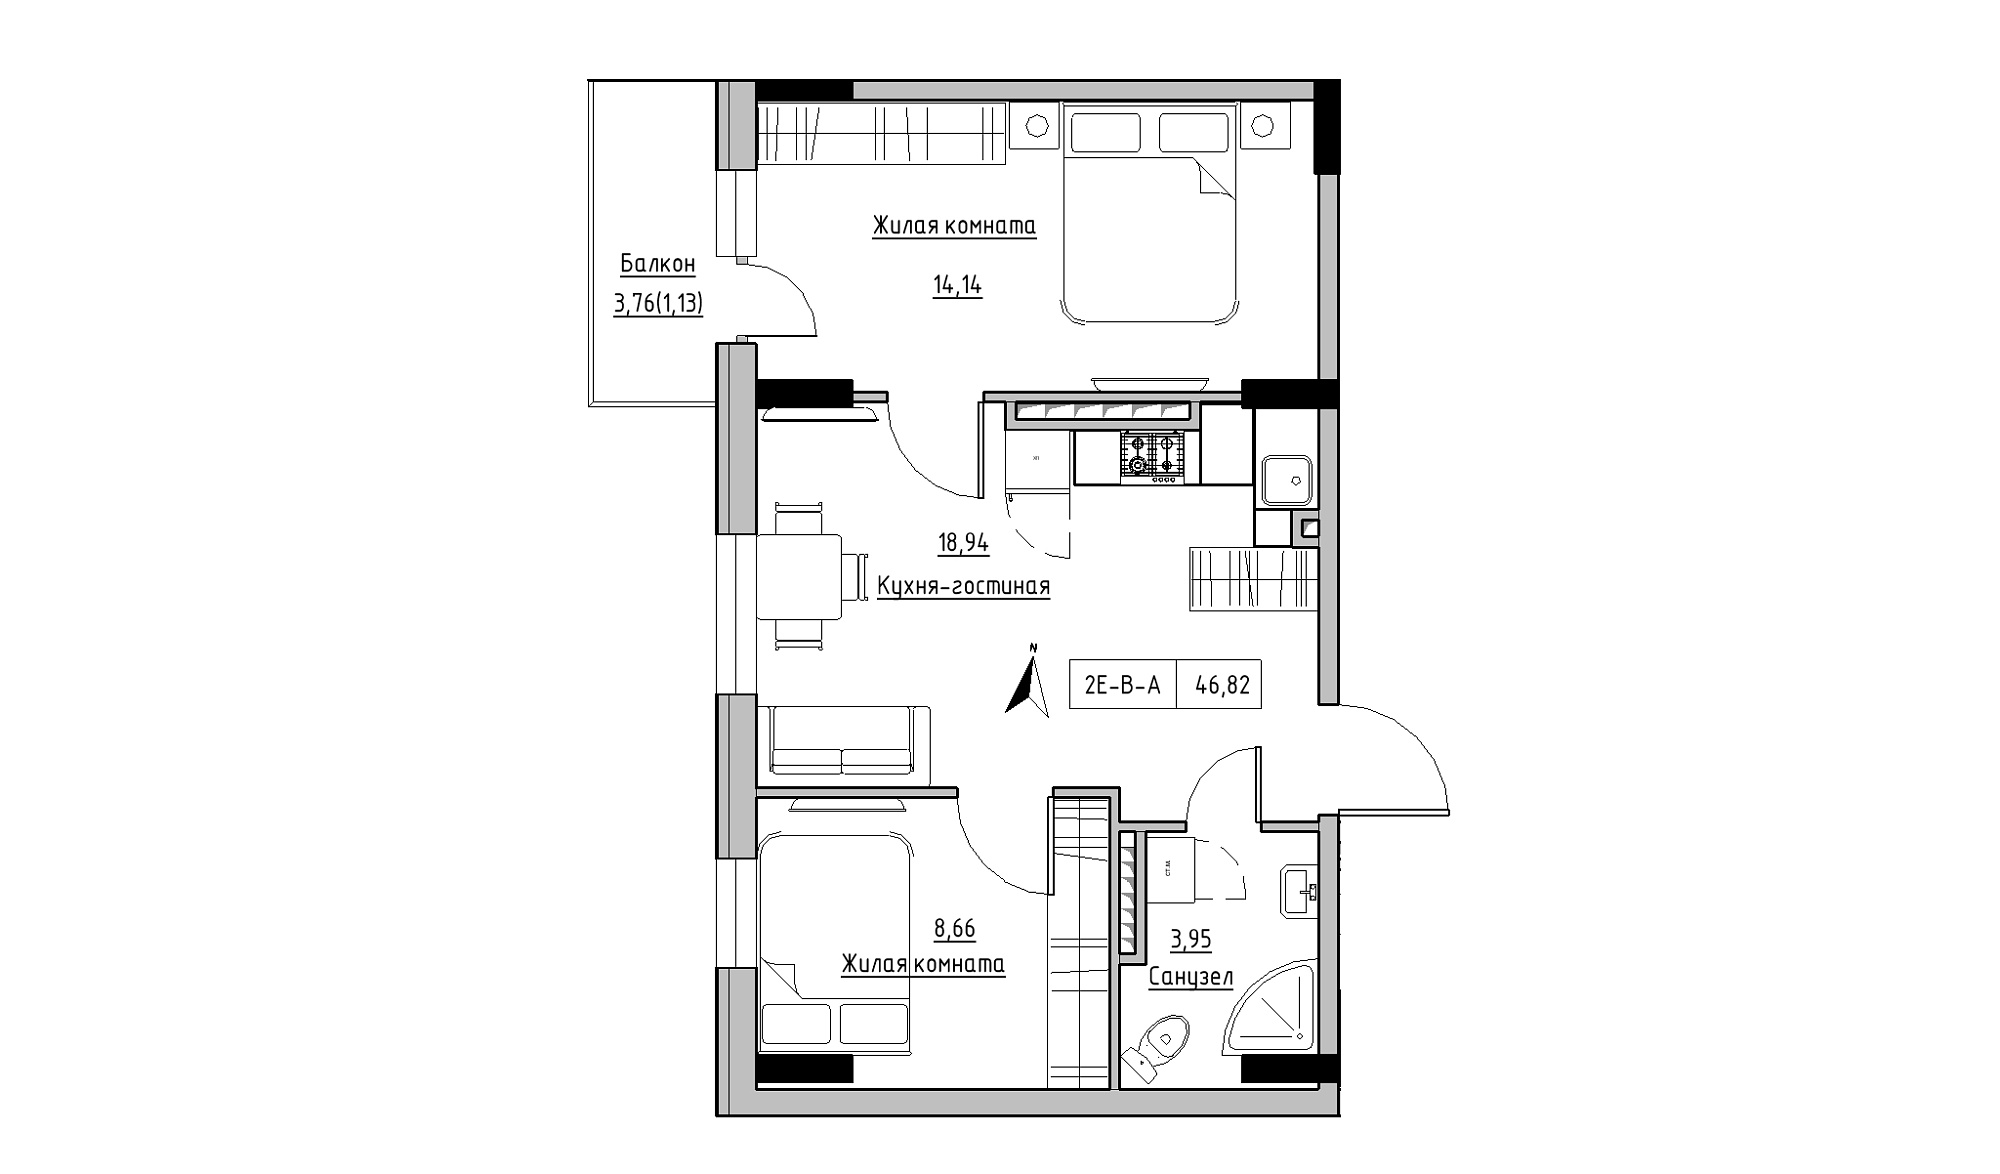 Планировка 2-к квартира площей 46.82м2, KS-025-05/0003.